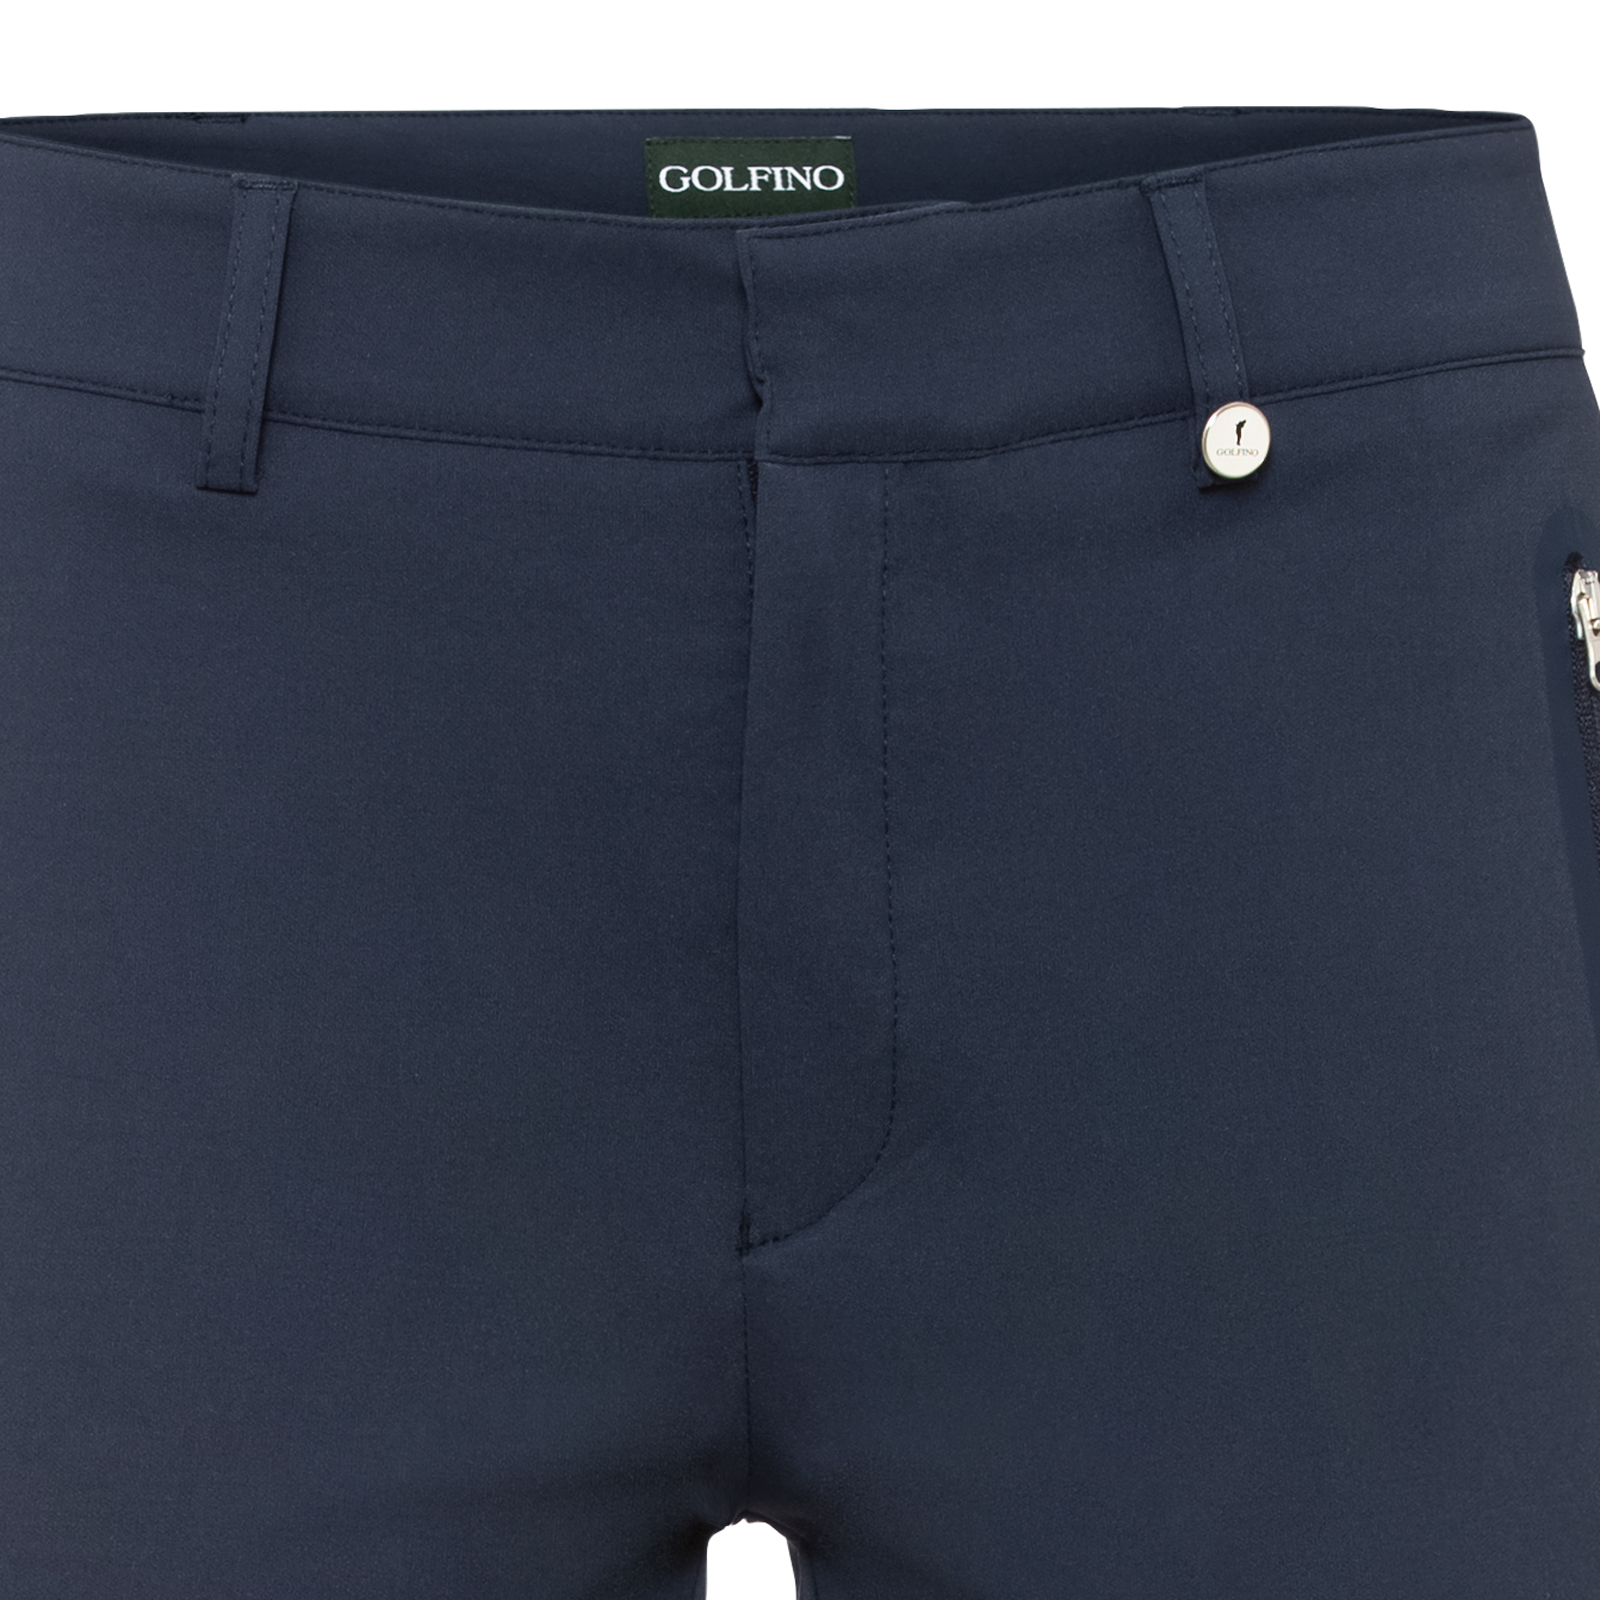 Pantalon de golf chaud de longueur 7/8 en stretch technique pour femmes